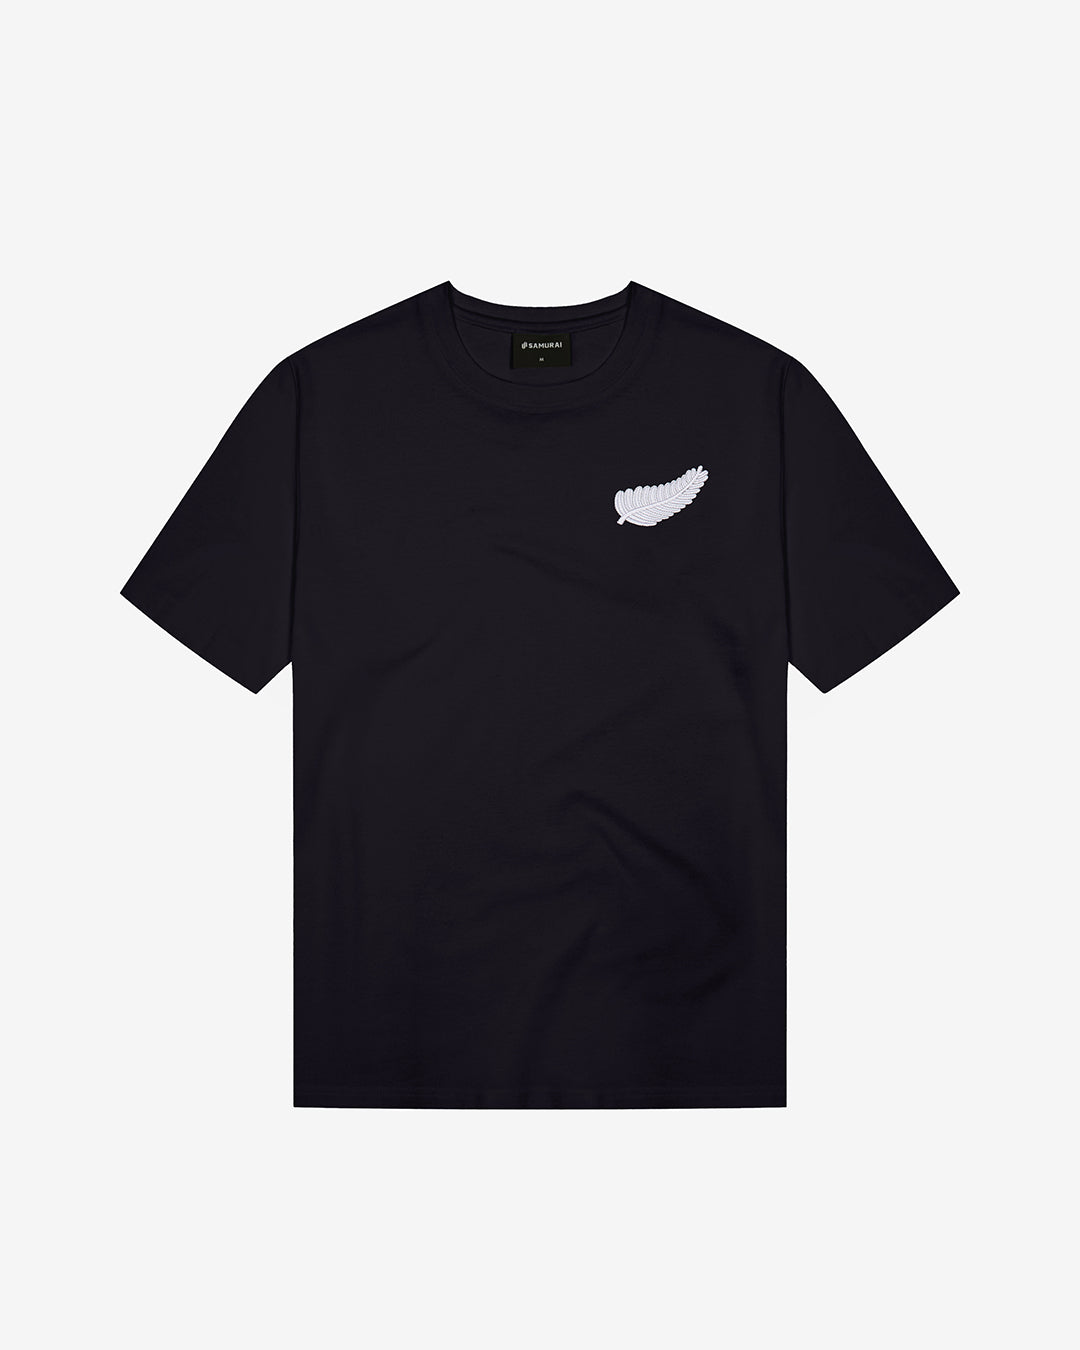 VC: NZL - Vintage T-Shirt - New Zealand